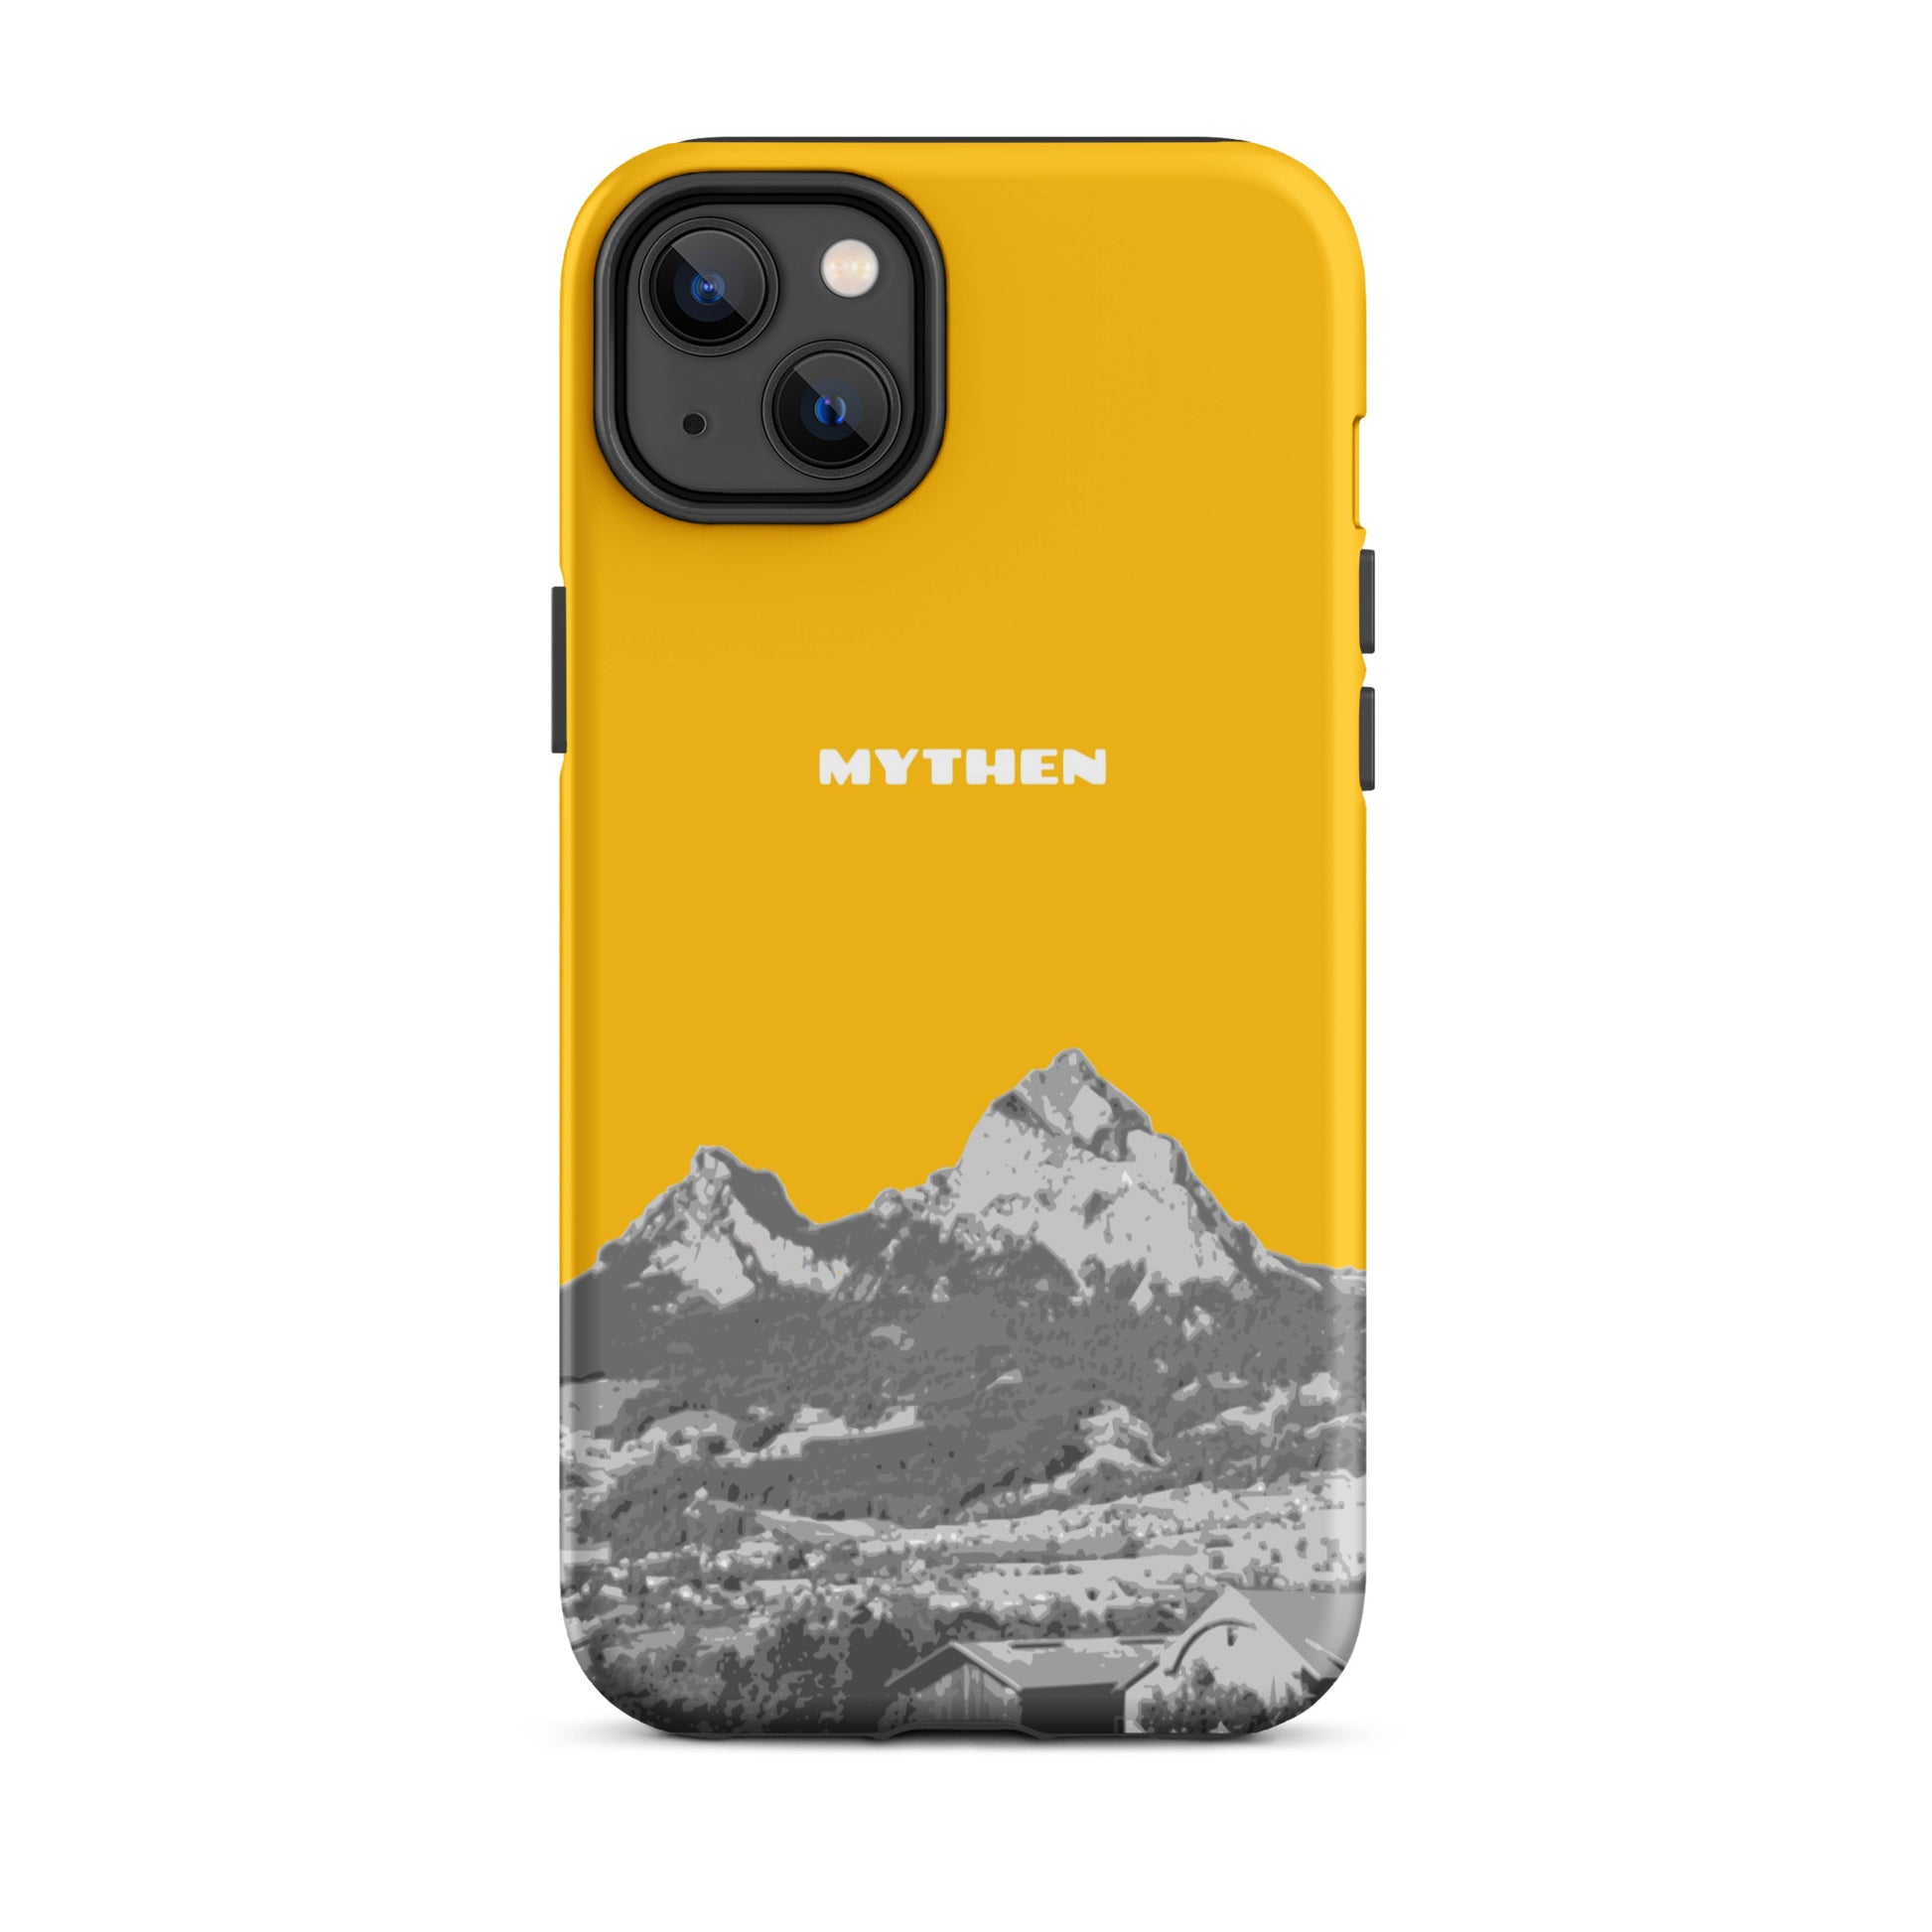 Hülle für das iPhone 14 Plus von Apple in der Farbe Goldgelb, dass den Grossen Mythen und den Kleinen Mythen bei Schwyz zeigt. 